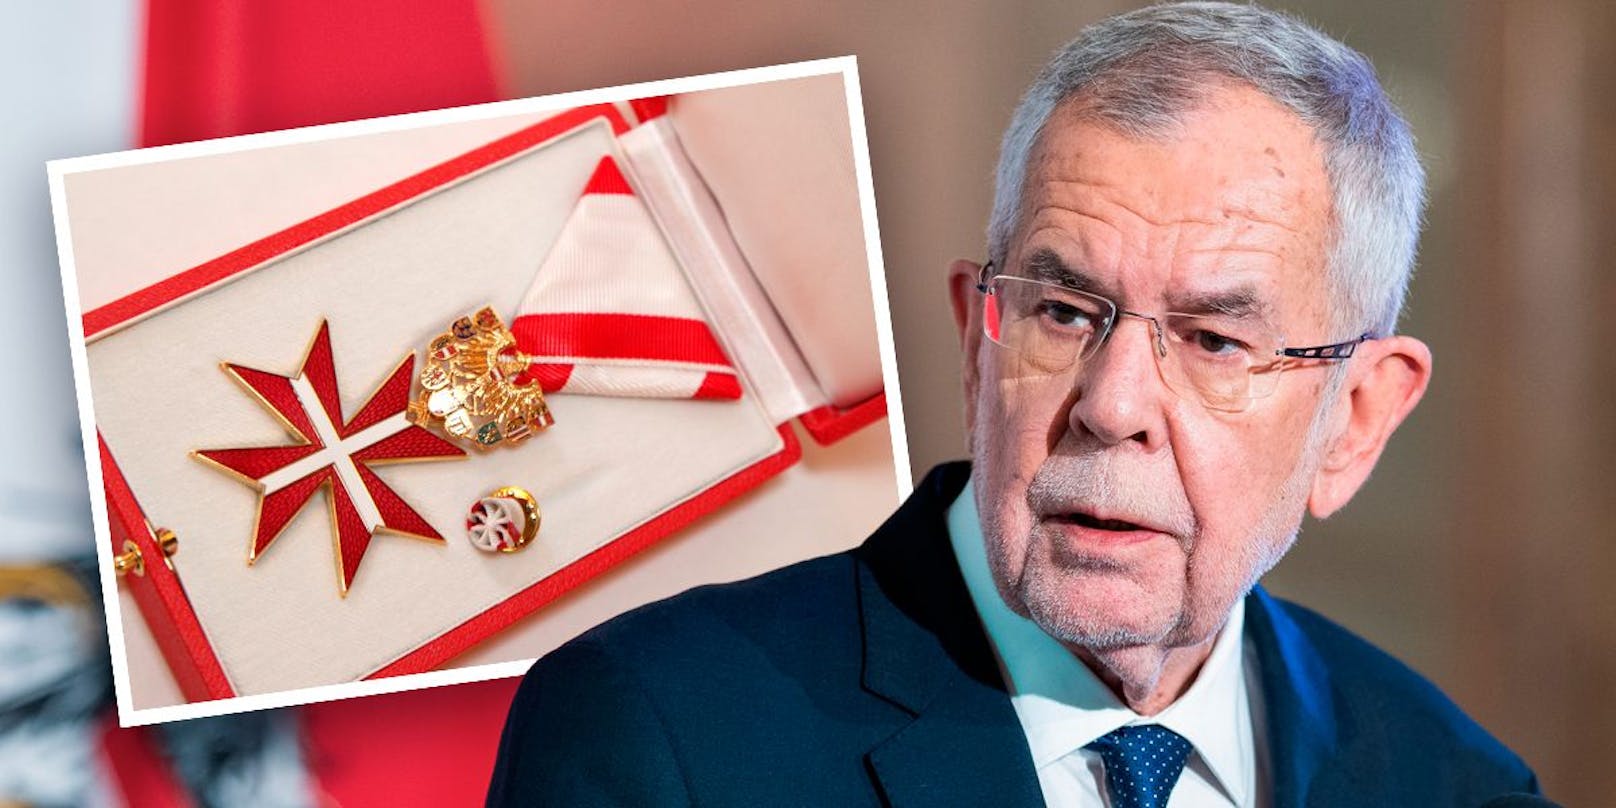 Ein Goldenes Ehrenzeichen für Verdienste um die Republik Österreich bekommt Van der Bellen nun zurückgeschickt. (Symbolbild)